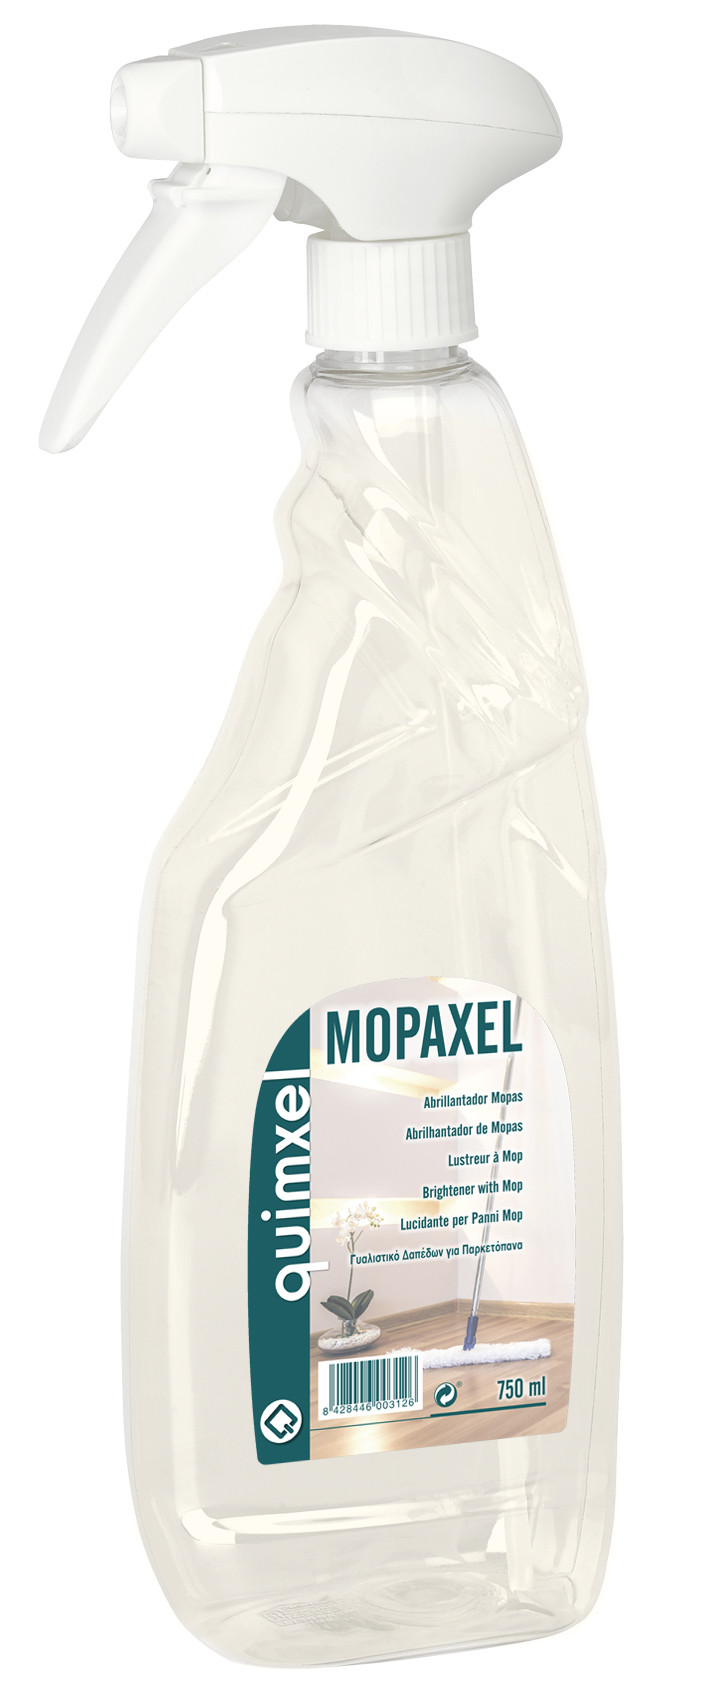 Abrillantador mopas. MOPAXEL 750 ml.